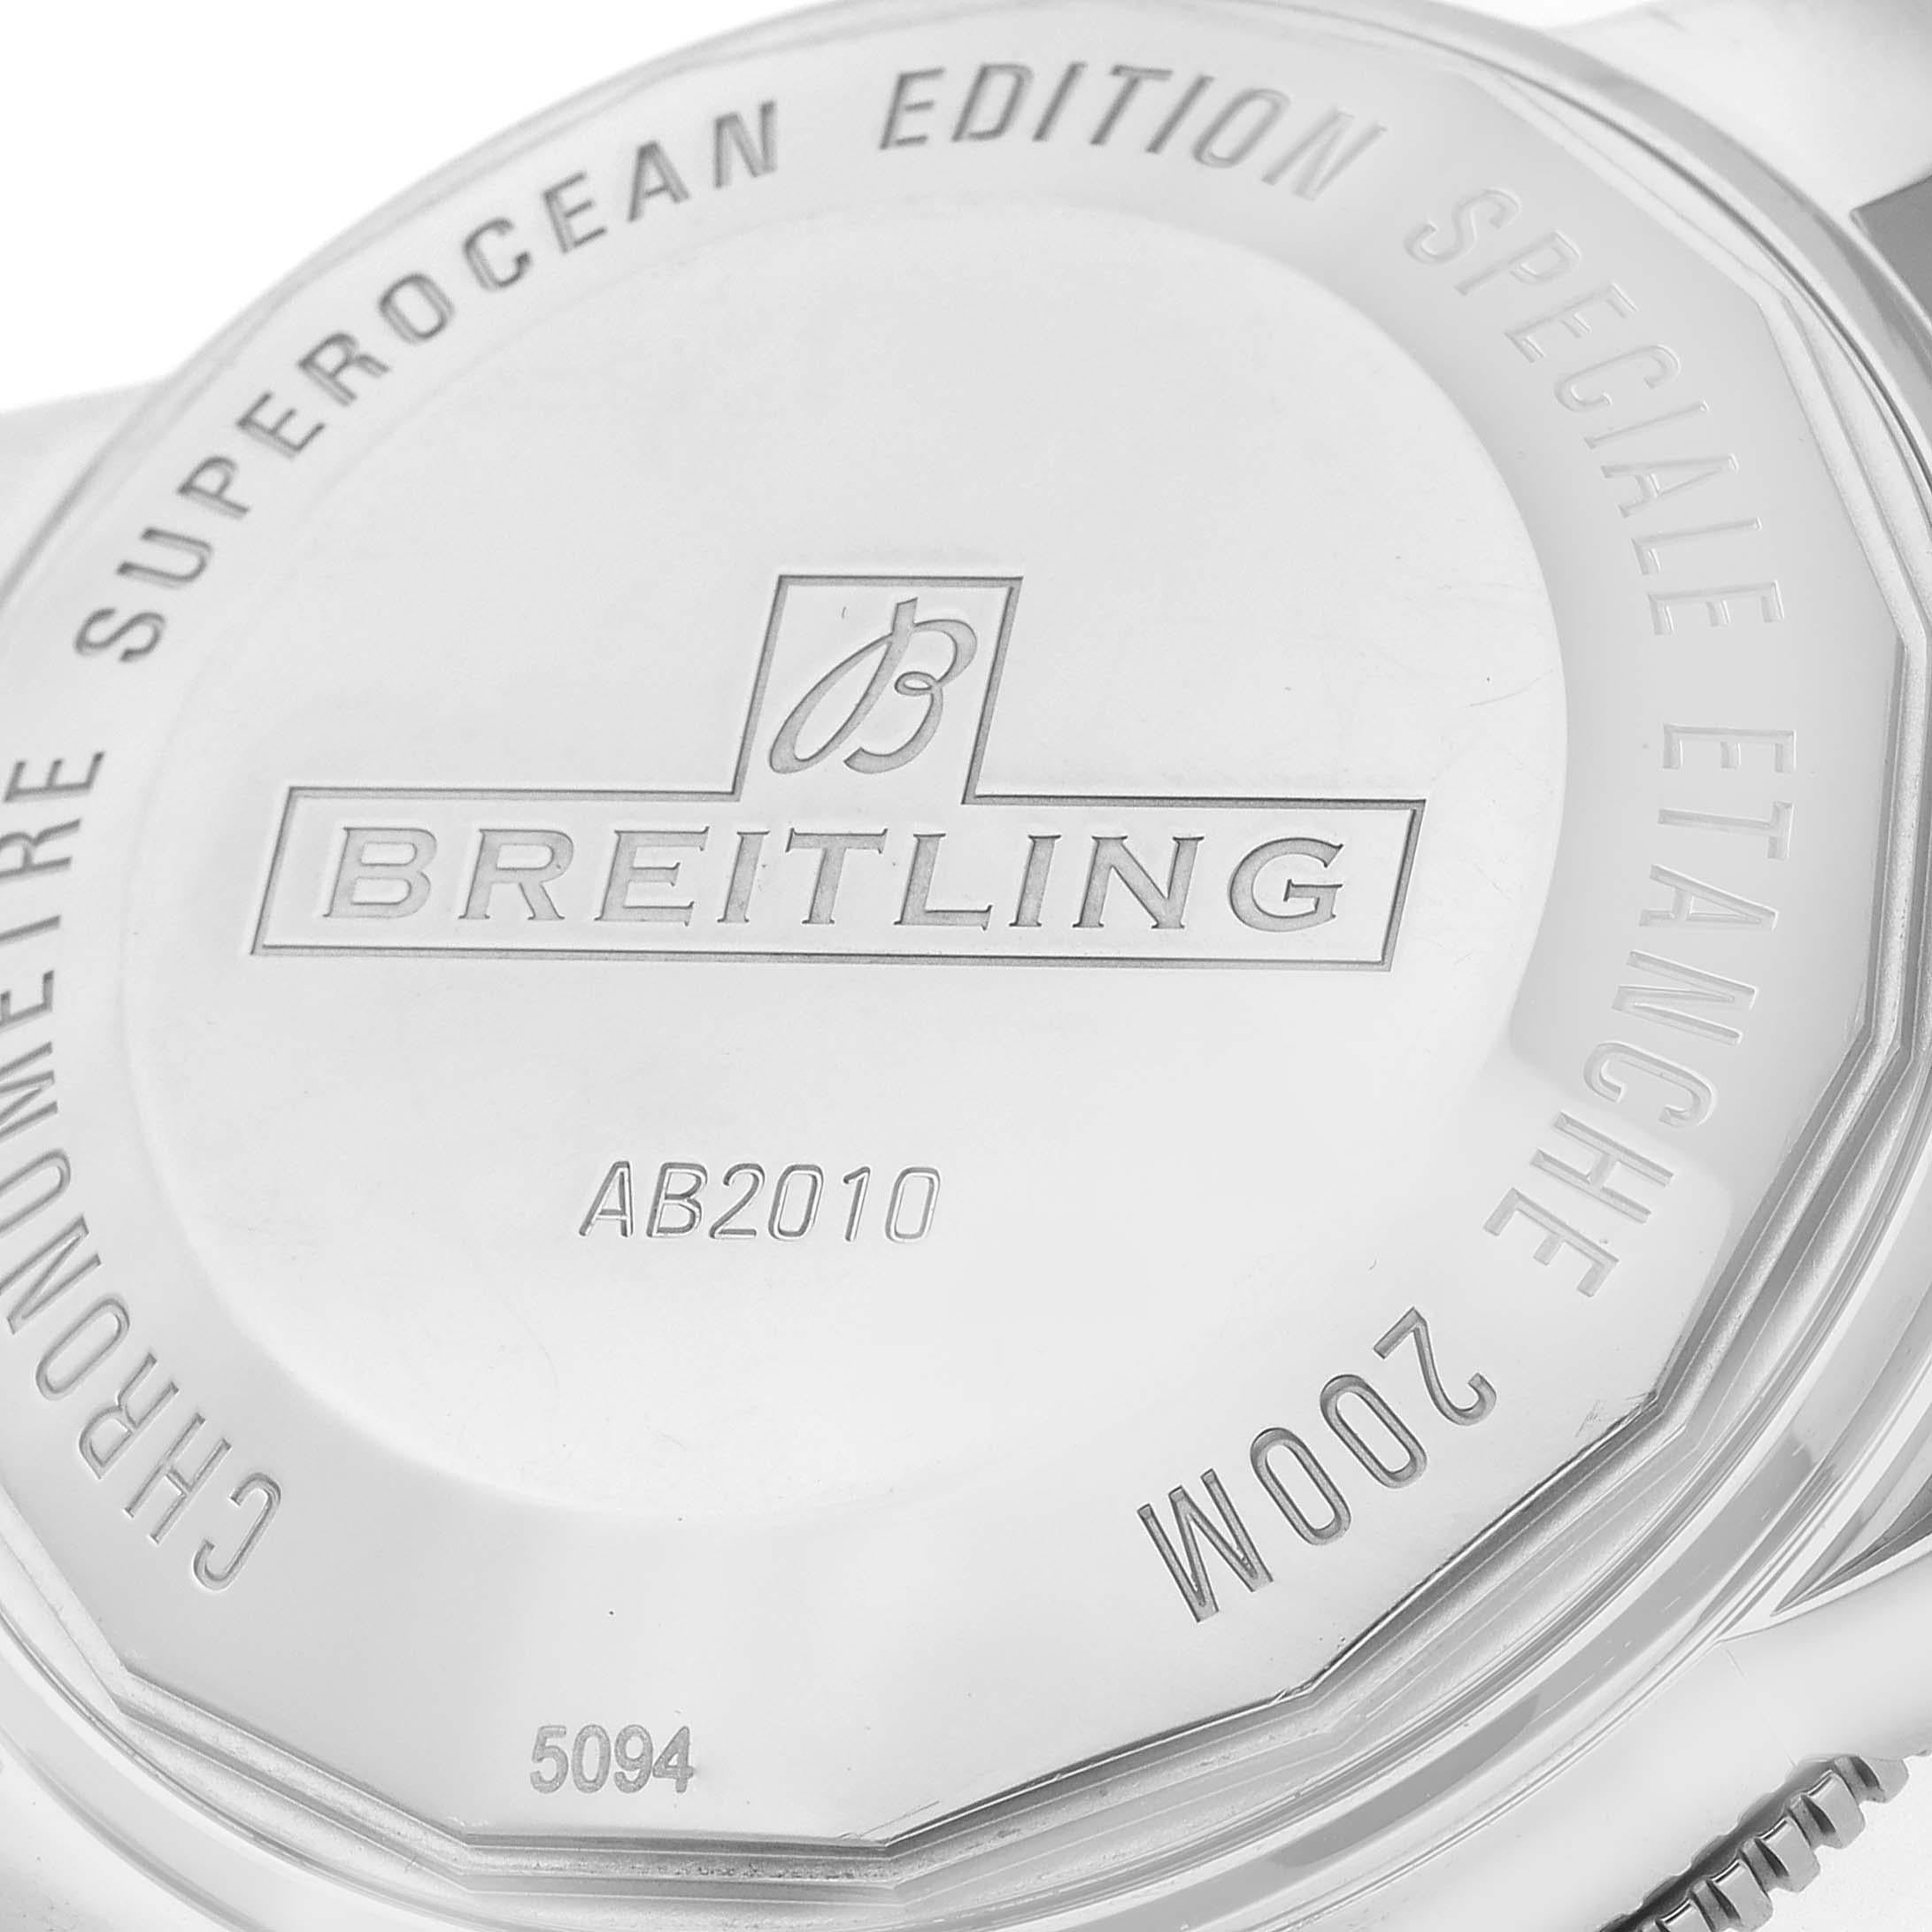 Breitling Superocean Heritage II 42 Black Dial Steel Mens Watch AB2010 3